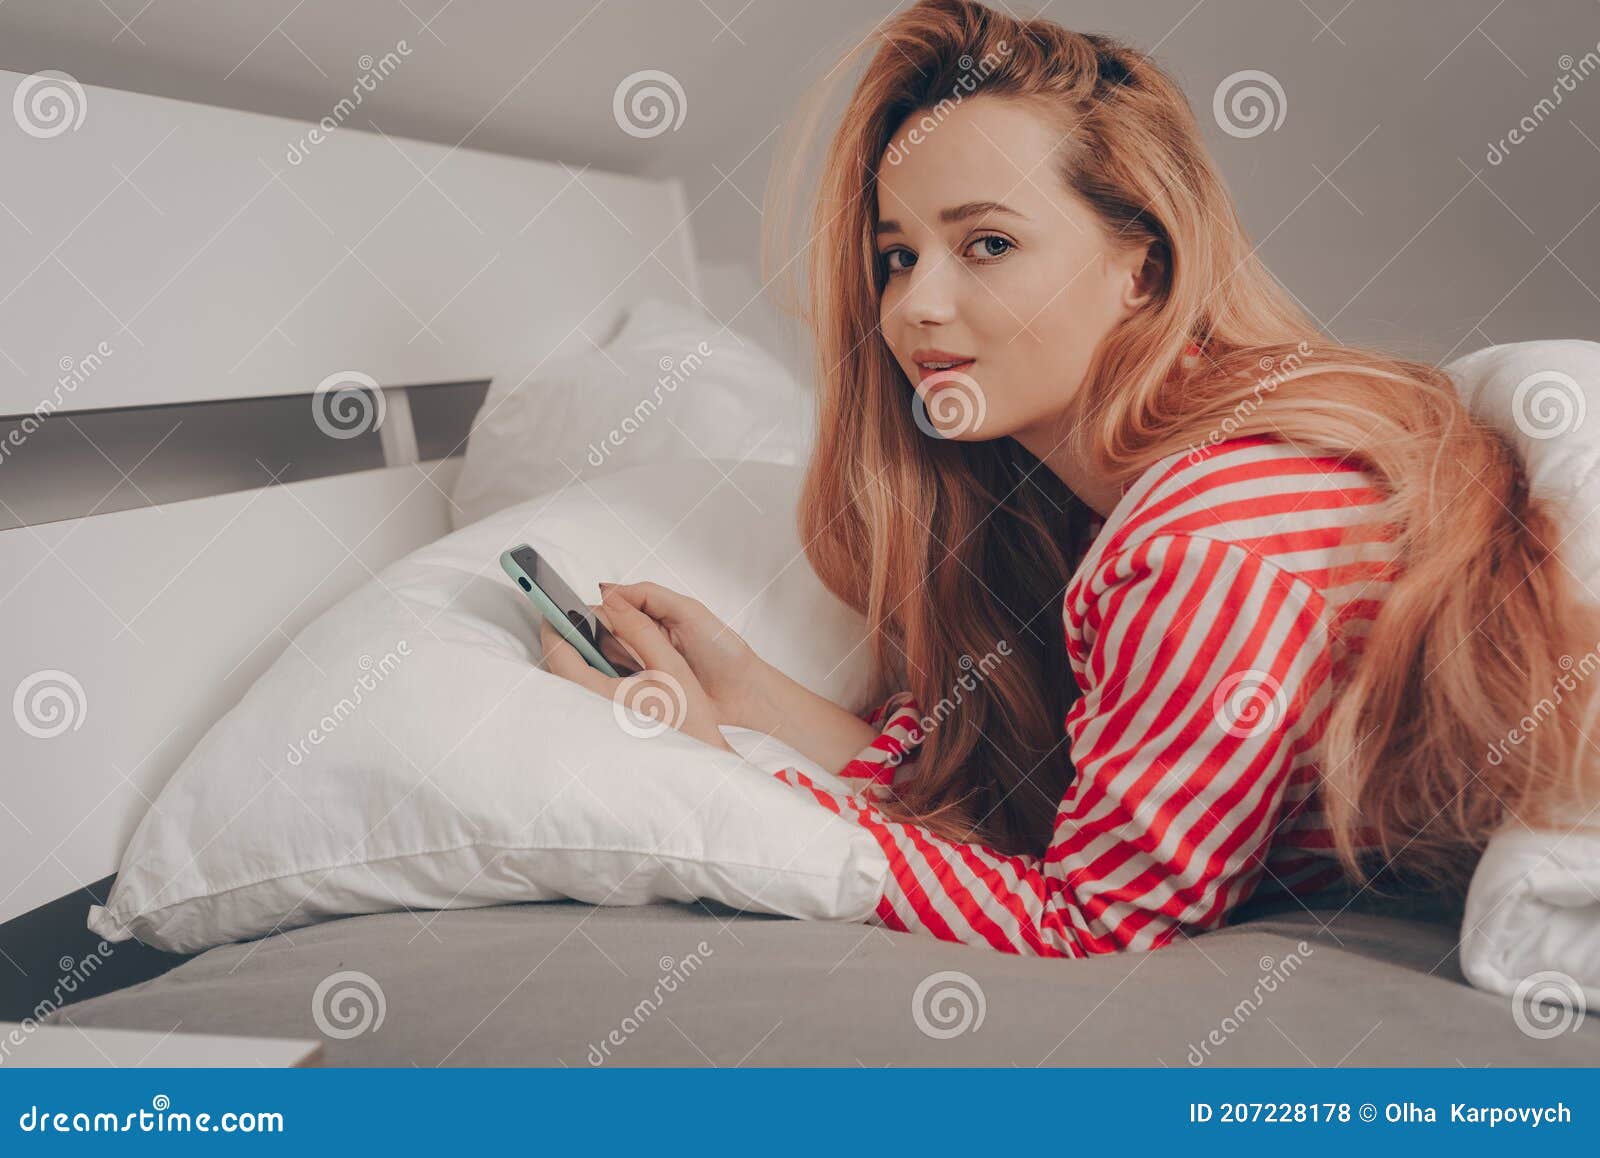 Una Bella Chica Con Cama Blanca Con Pijama Rayada Roja No Puede Dormir Mira Teléfono. Sin Dormir Un Smartphone En Manos Foto de archivo - Imagen de lifestyle, social: